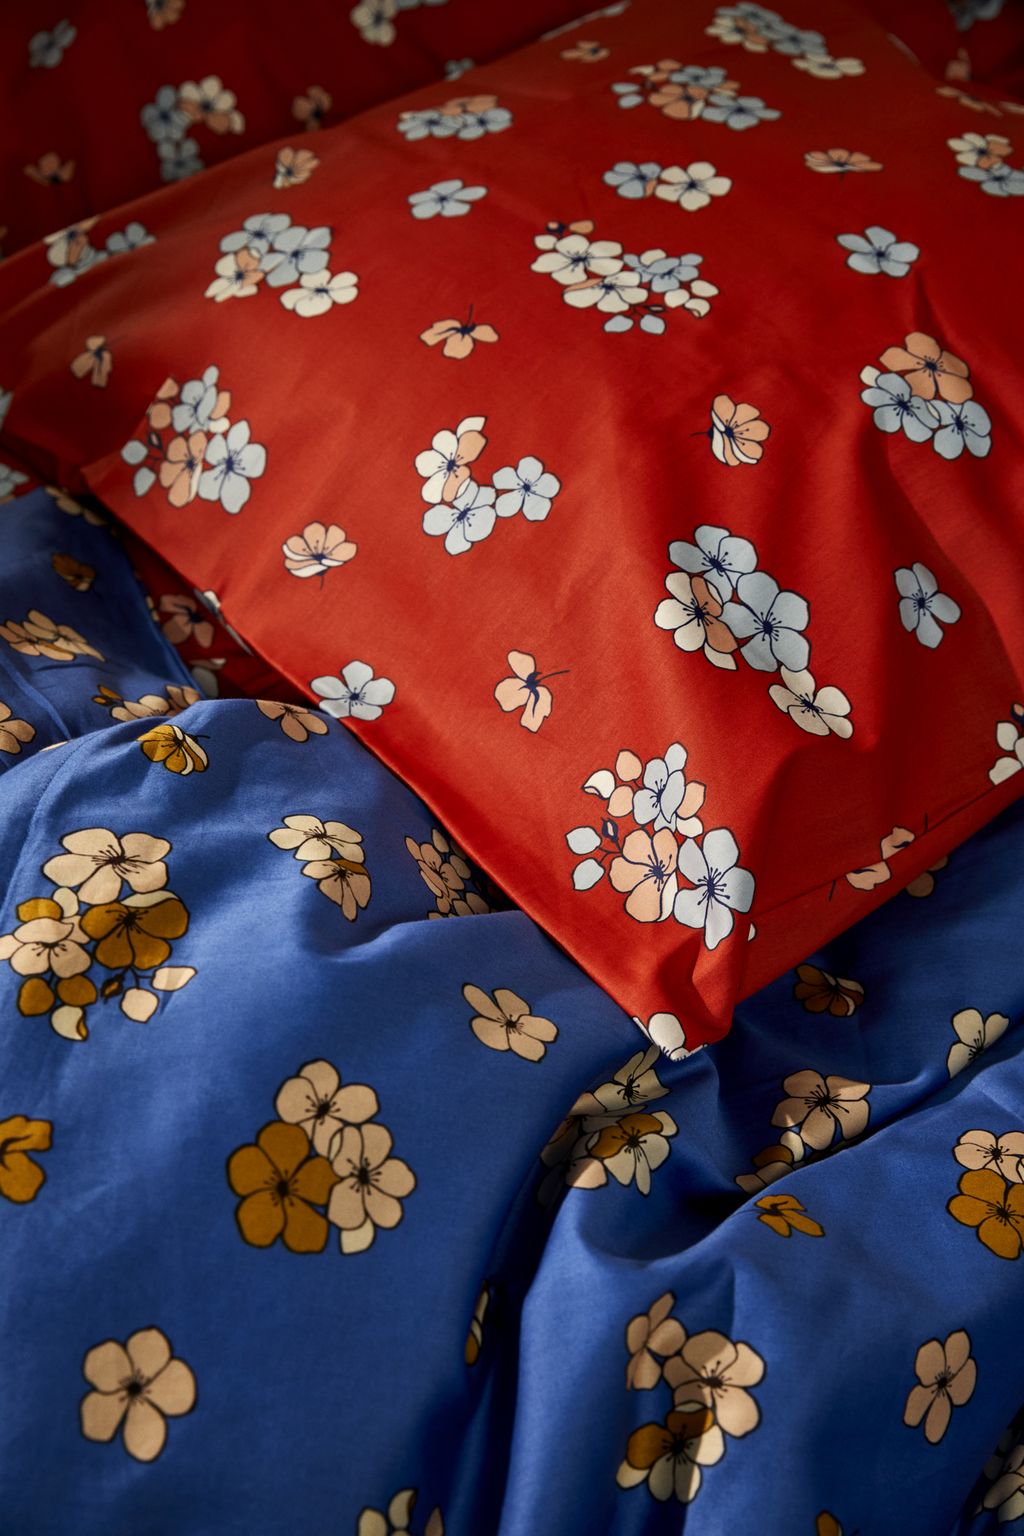 Juna Stora behagligt sängkläder 140 x220 cm, blå